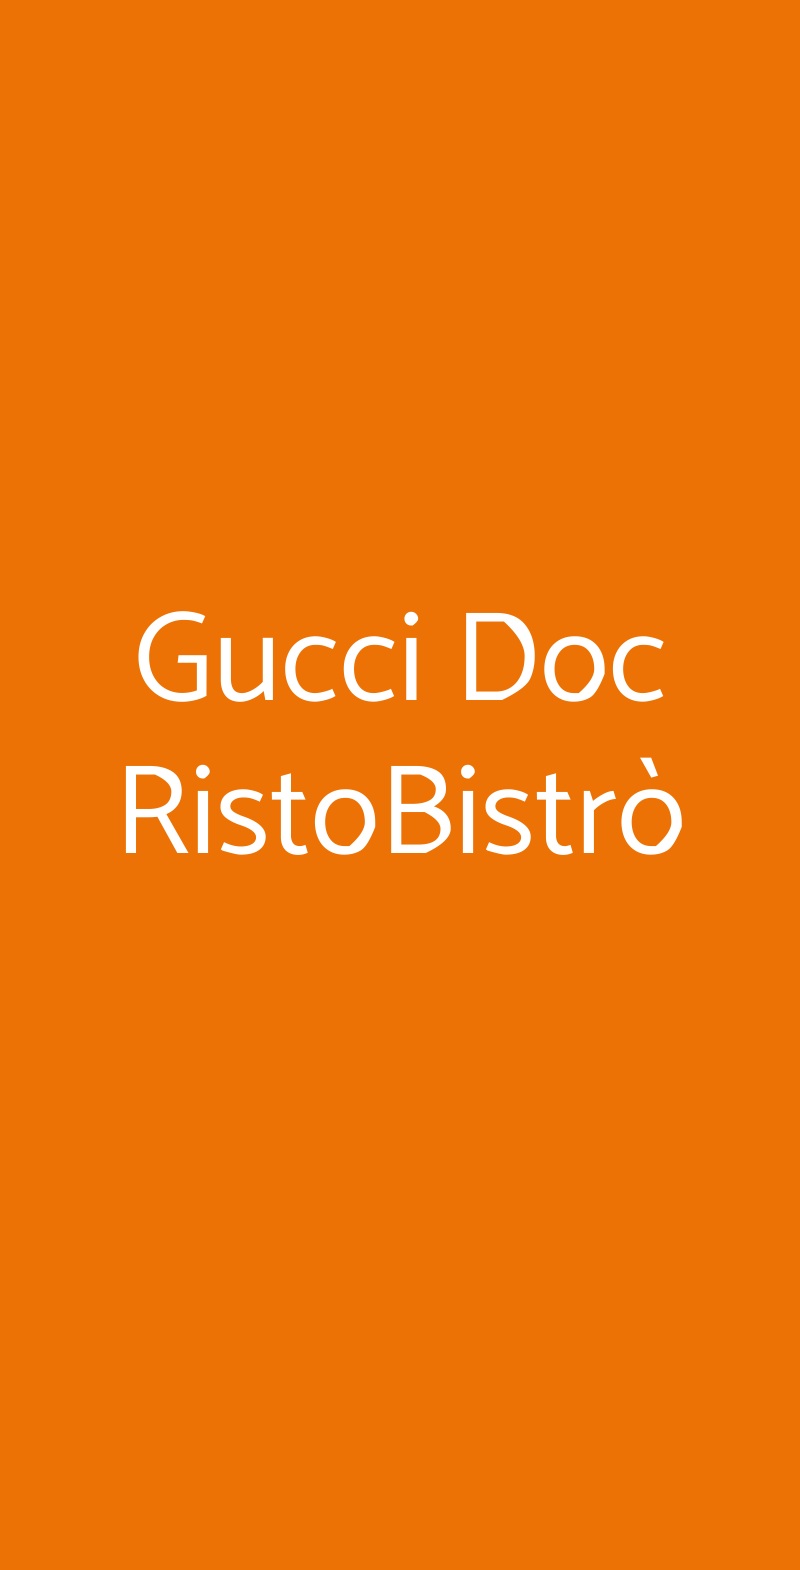 Gucci Doc RistoBistrò Prato menù 1 pagina